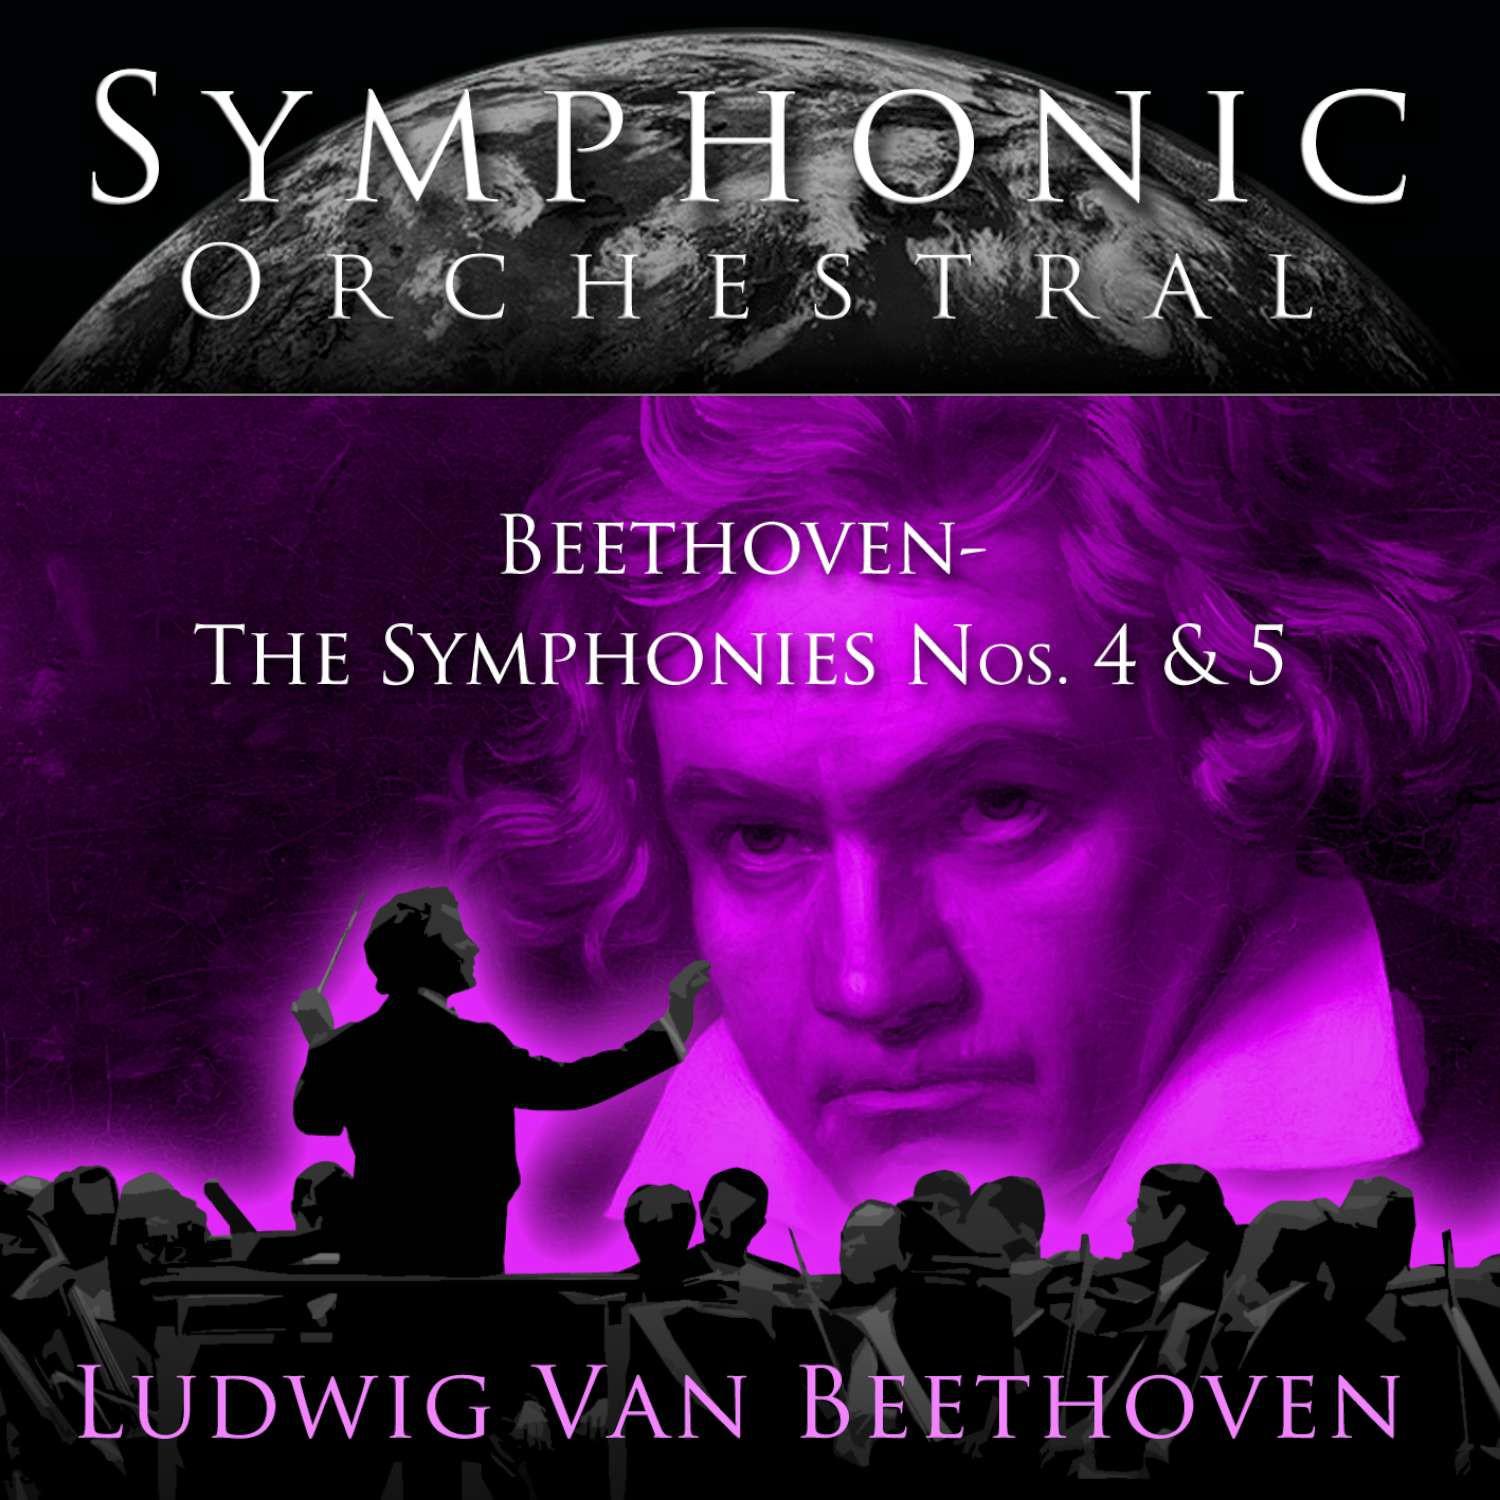 Beethoven: Symphony #5 in C Minor, Op. 67 - 4. Allegro